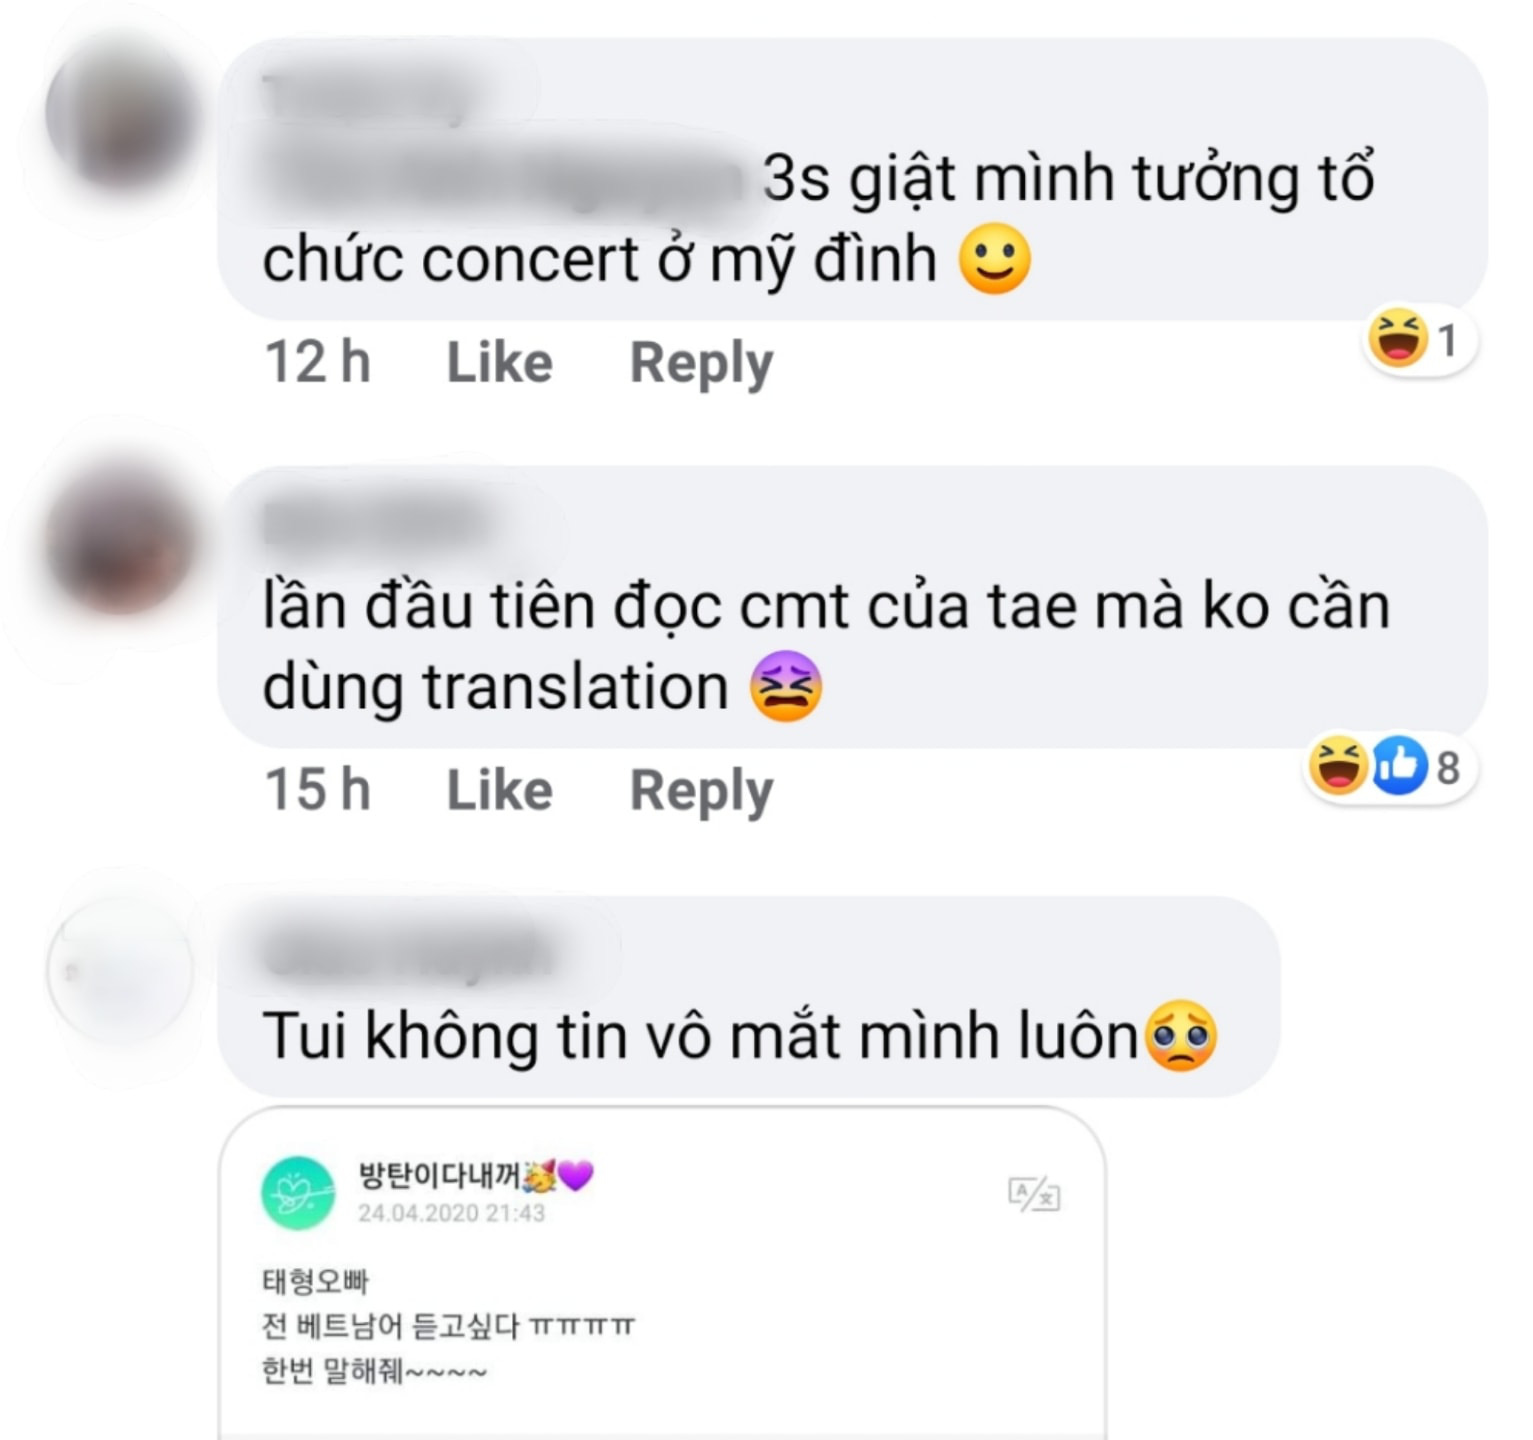 Nam thần đẹp trai nhất thế giới bất ngờ thả thính siêu ngọt bằng tiếng Việt, fan rần rần đoán BTS sắp có gì đó ở Việt Nam - Ảnh 7.